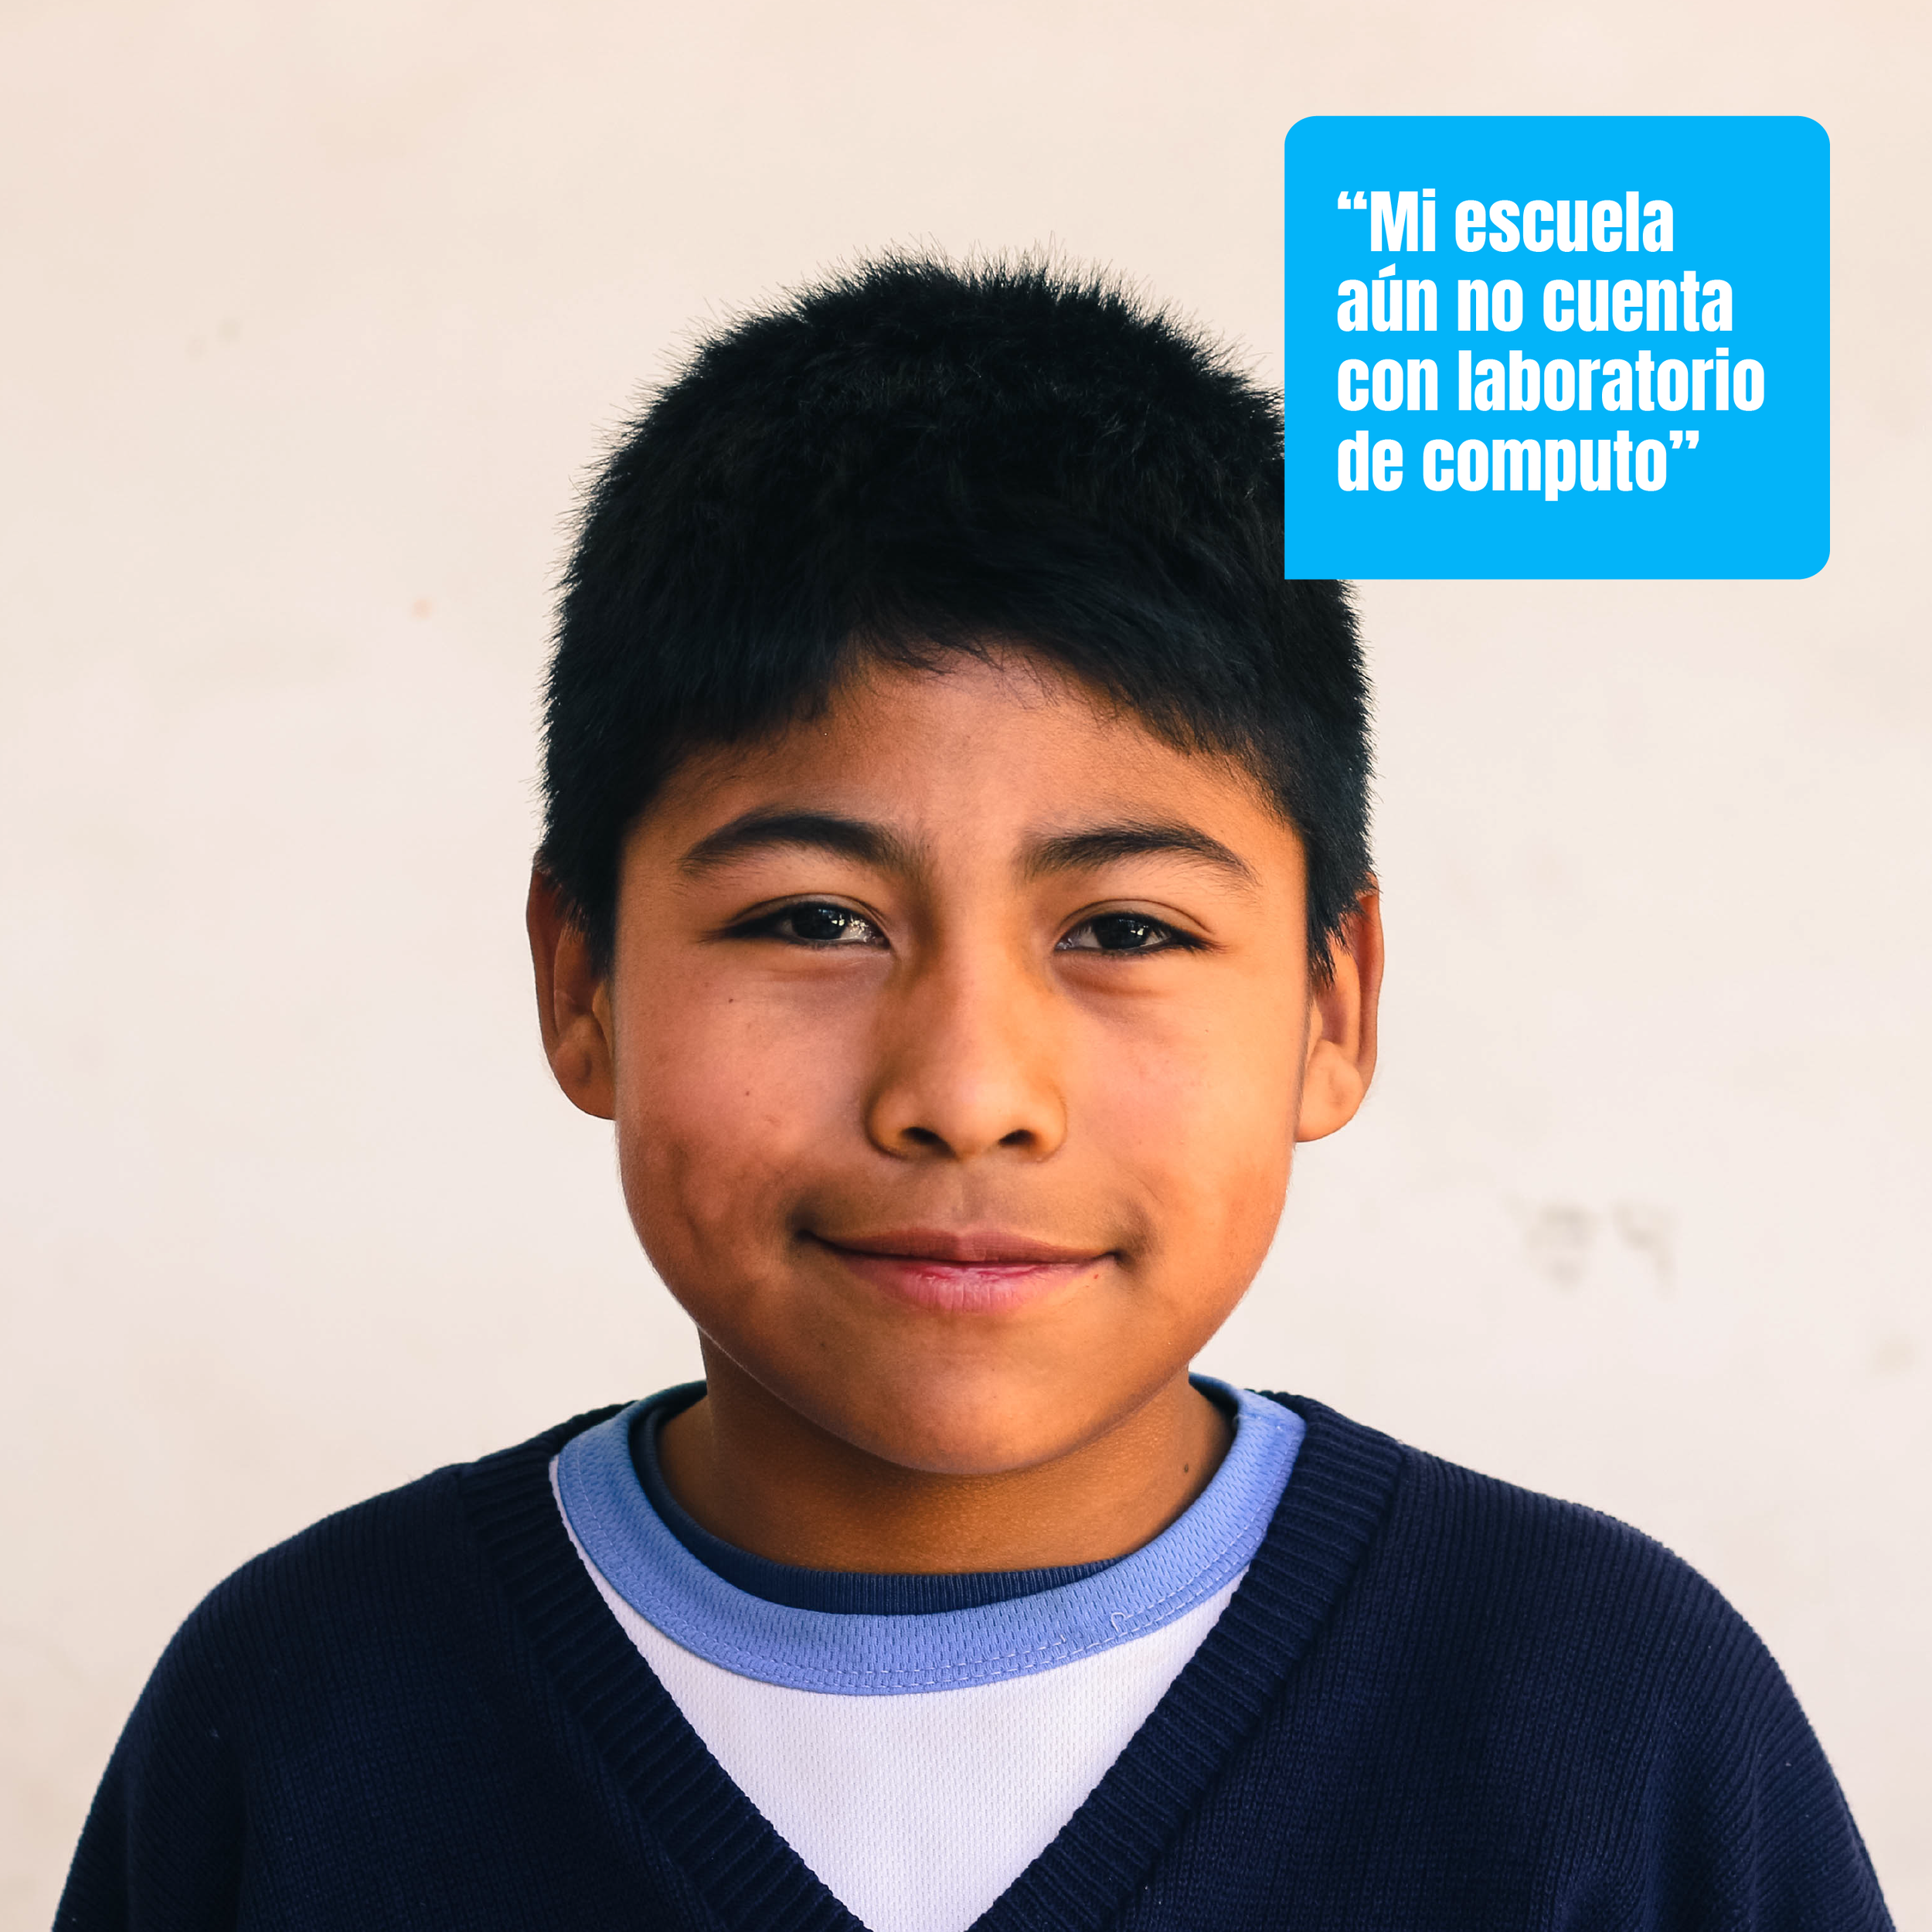  Hoy en Guatemala, hay más de 18,000 escuelas primarias públicas, de las cuales aproximadamente un 90% no tienen acceso a la tecnología. 